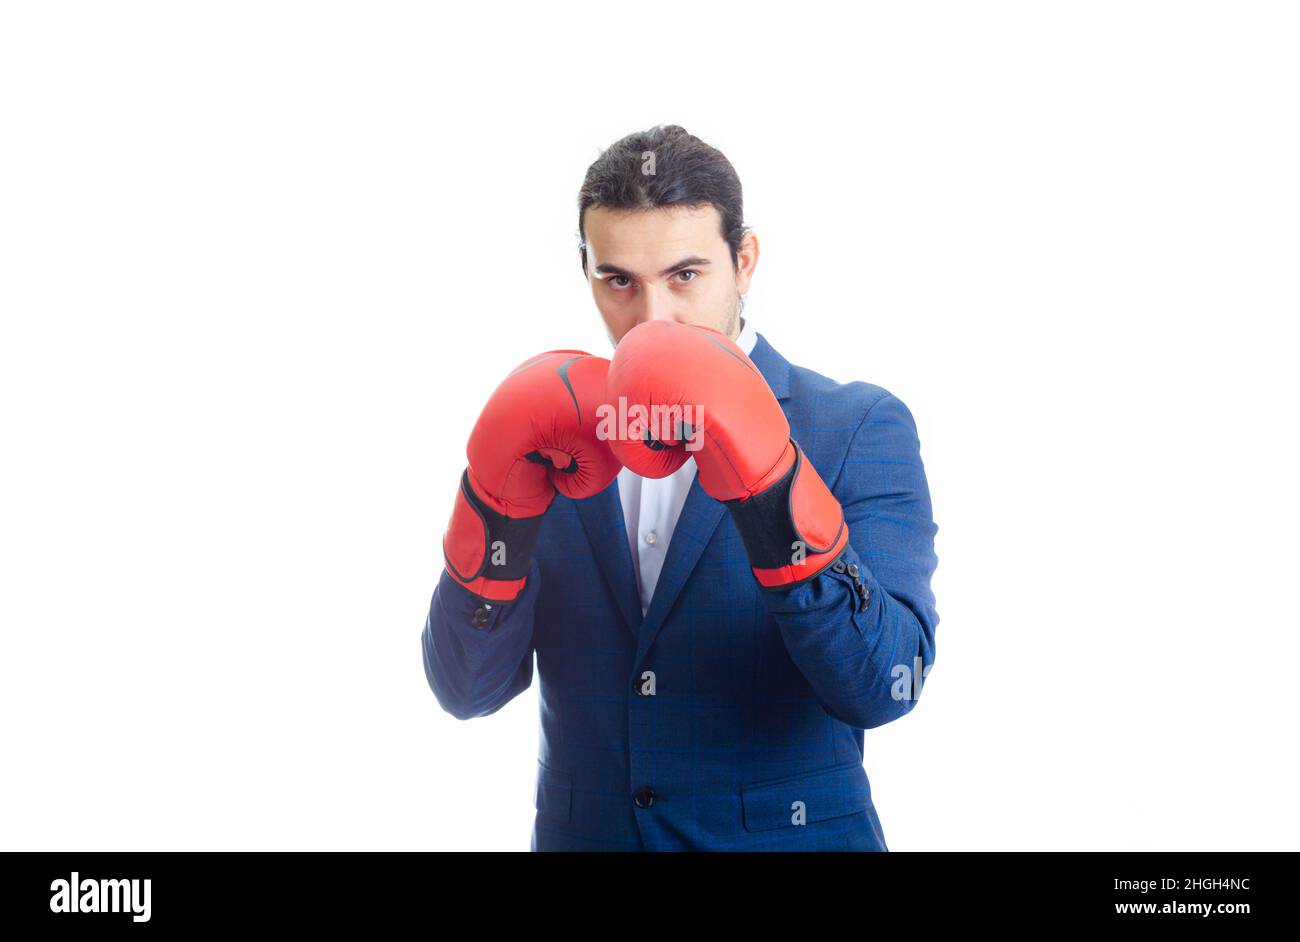 Geschäftsmann mit roten Boxhandschuhen steht in Kampfposition. Porträt einer entschlossenen Geschäftsperson, die für den Kampf auf weißem Hintergrund isoliert vorbereitet ist Stockfoto